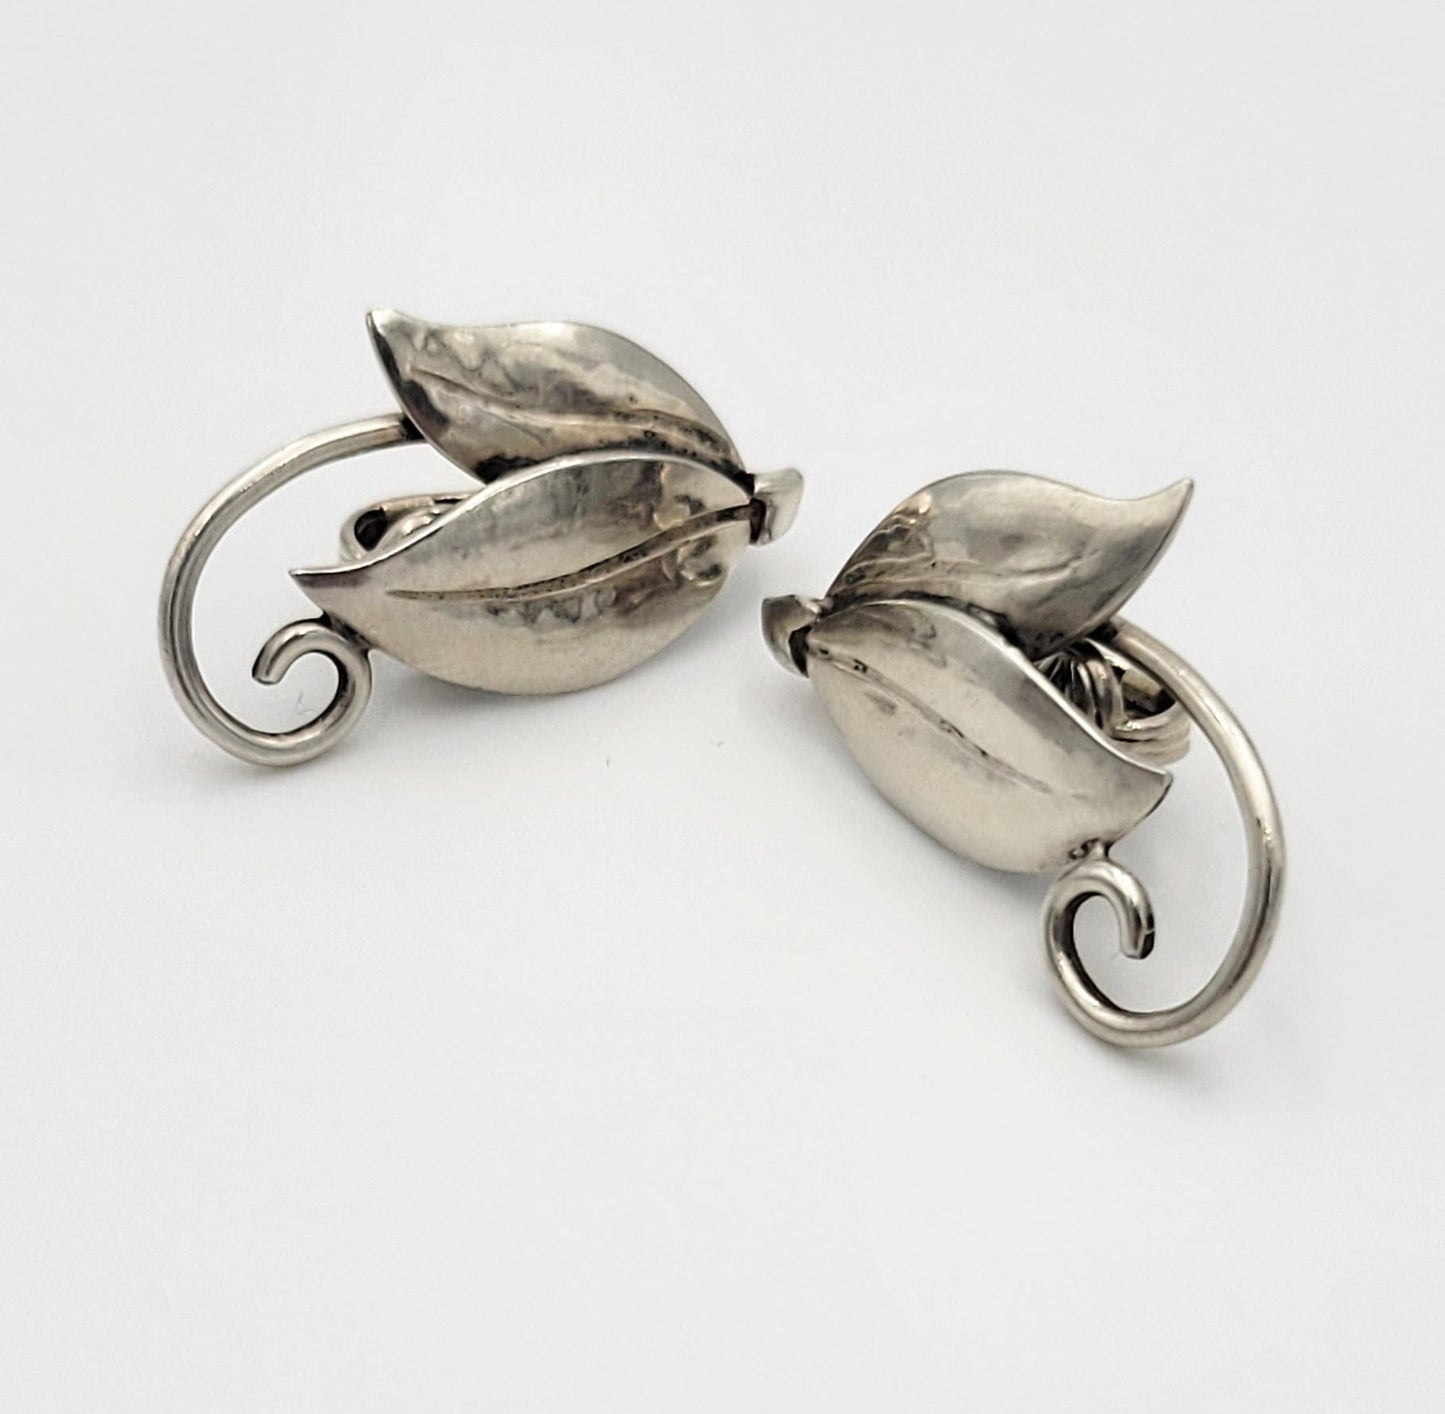 Joan Polsdorfer Jewelry 1950s JoPoL Georg Jensen Modernist Sterling Silver Flower Earrings #317 RARE!